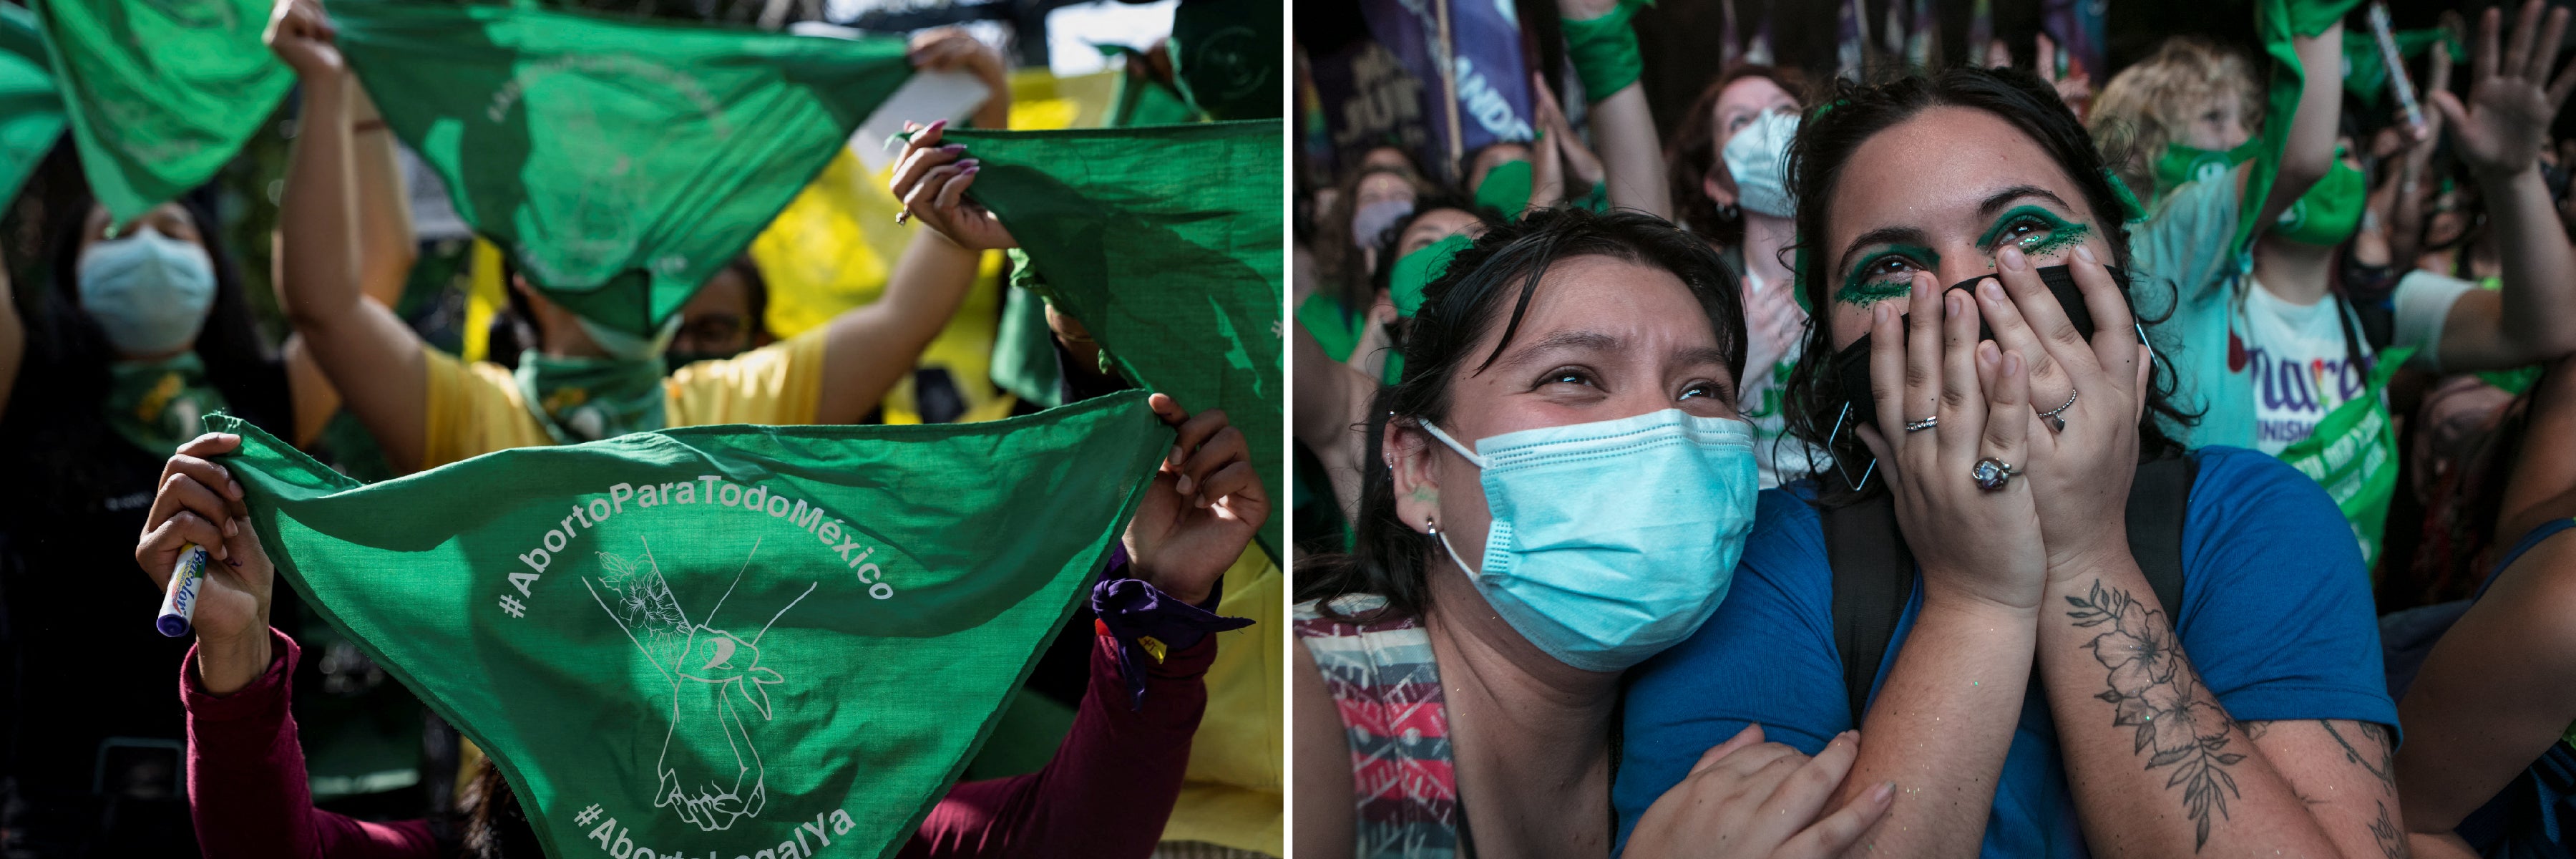 À GAUCHE : Une manifestante brandissait un foulard soutenant le droit à l'avortement, lors d'un rassemblement devant l'ambassade des États-Unis à Mexico, le 29 juin 2022, cinq jour après la décision de la Cour suprême américaine de révoquer ce droit aux États-Unis. © 2022 Toya Sarno Jordanie/Reuters. À DROITE : Ces manifestantes exprimaient leur espoir suscité par un projet de loi visant à légaliser l'avortement en Argentine, lors d’un rassemblement à Buenos Aires, le 29 décembre 2020. Le Congrès argentin a